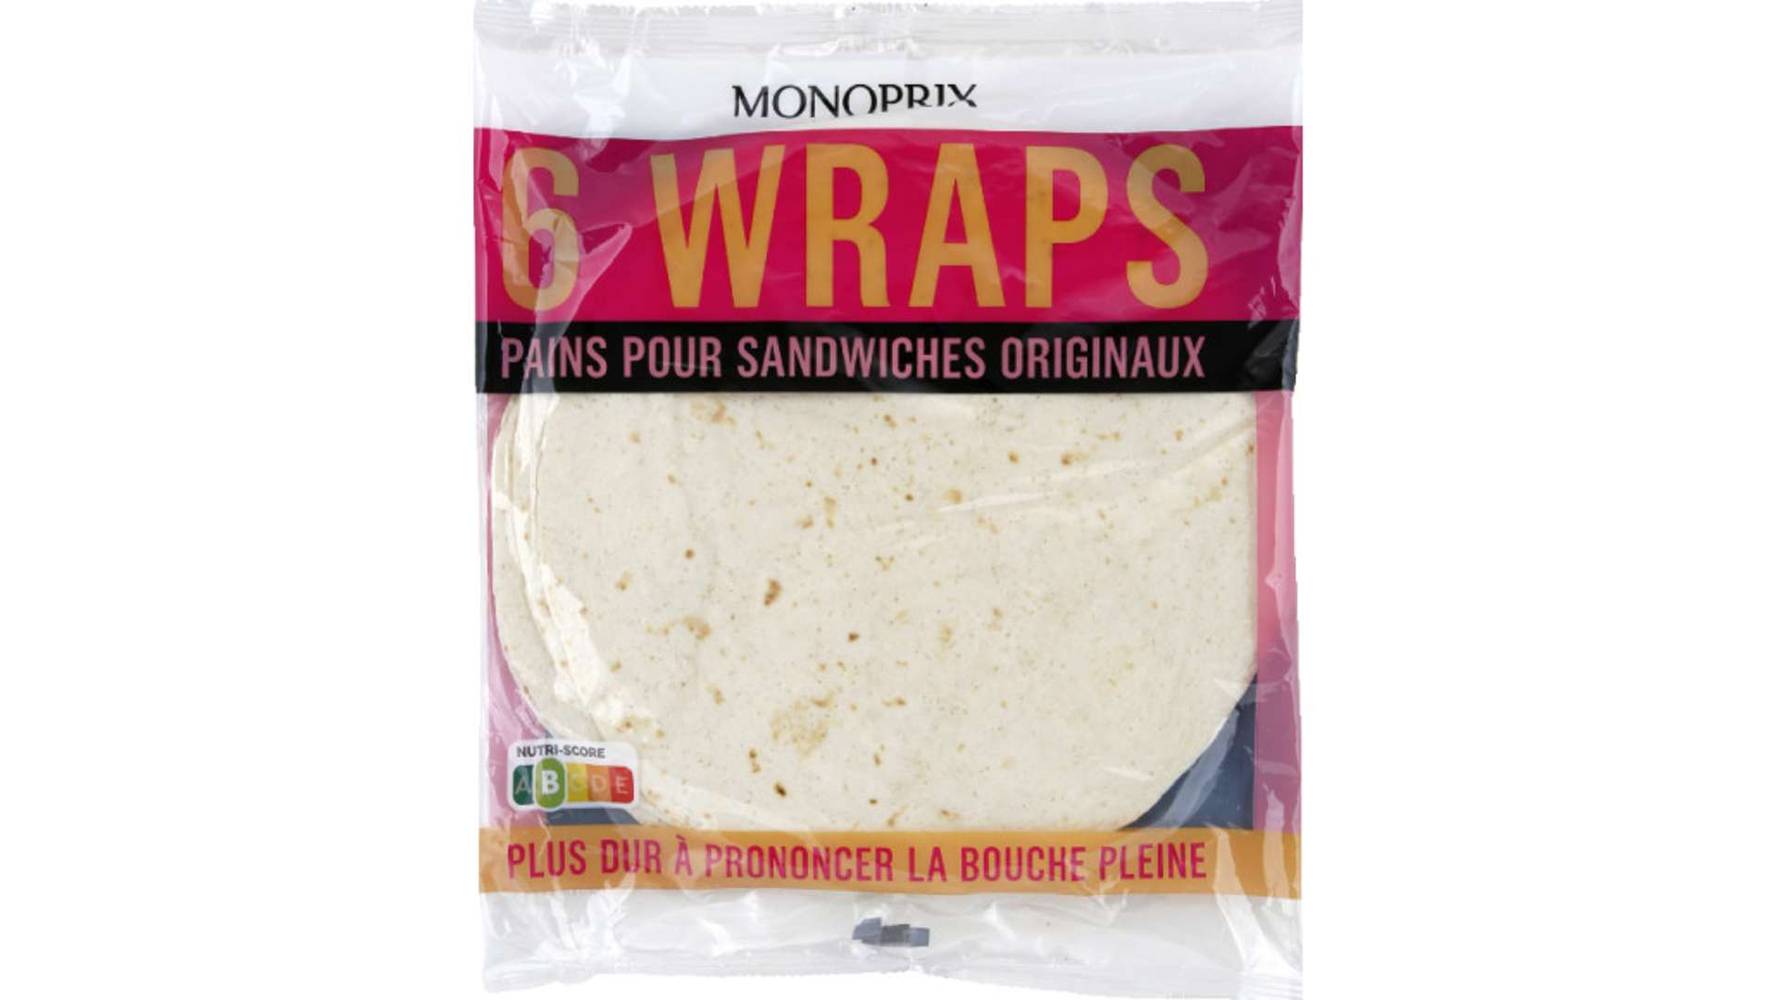 Monoprix - Wraps au pain pour des sandwichs originaux